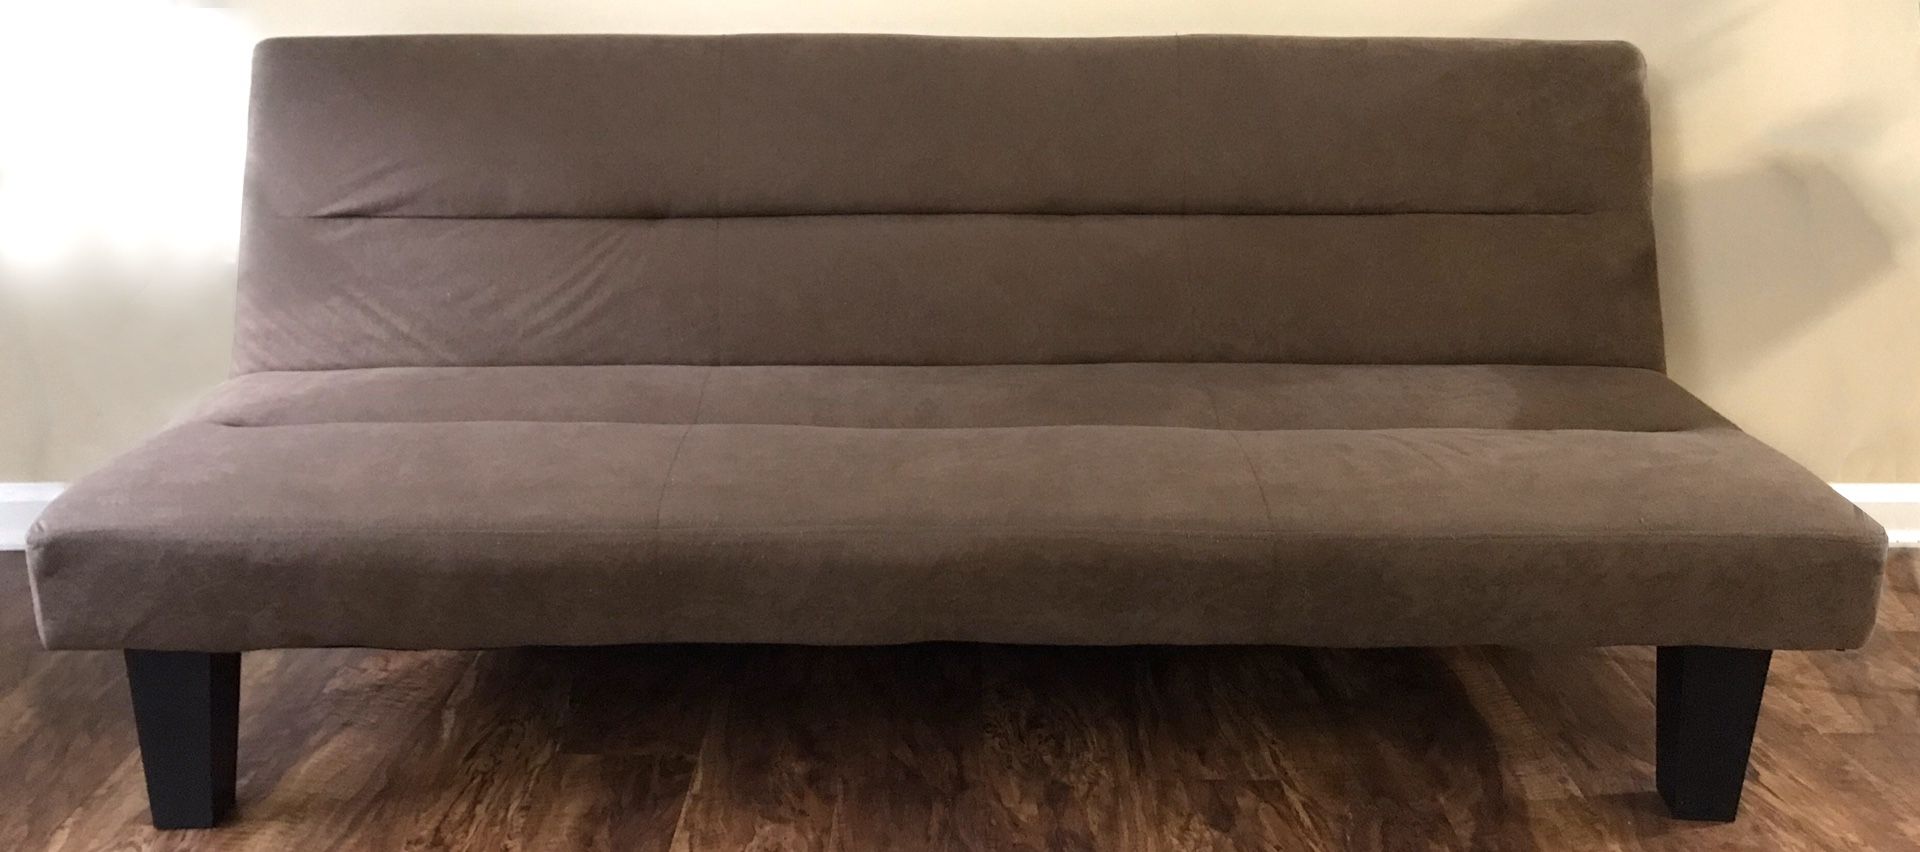 Futon, sofa